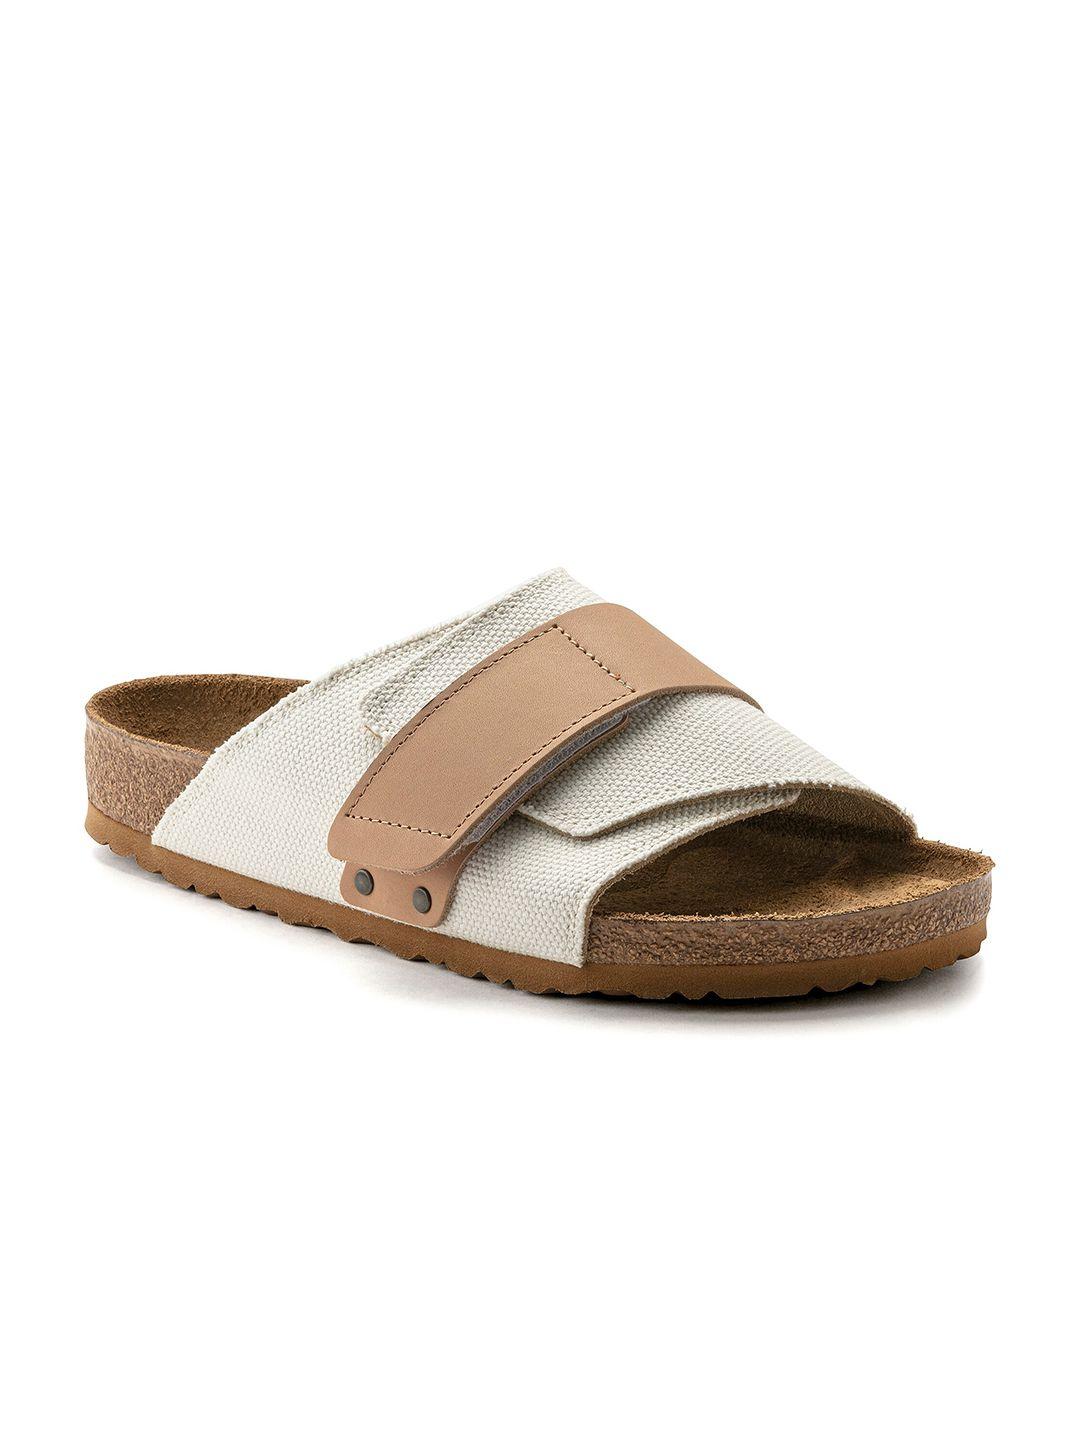 birkenstock men kyoto regular width one-strap comfort sandals